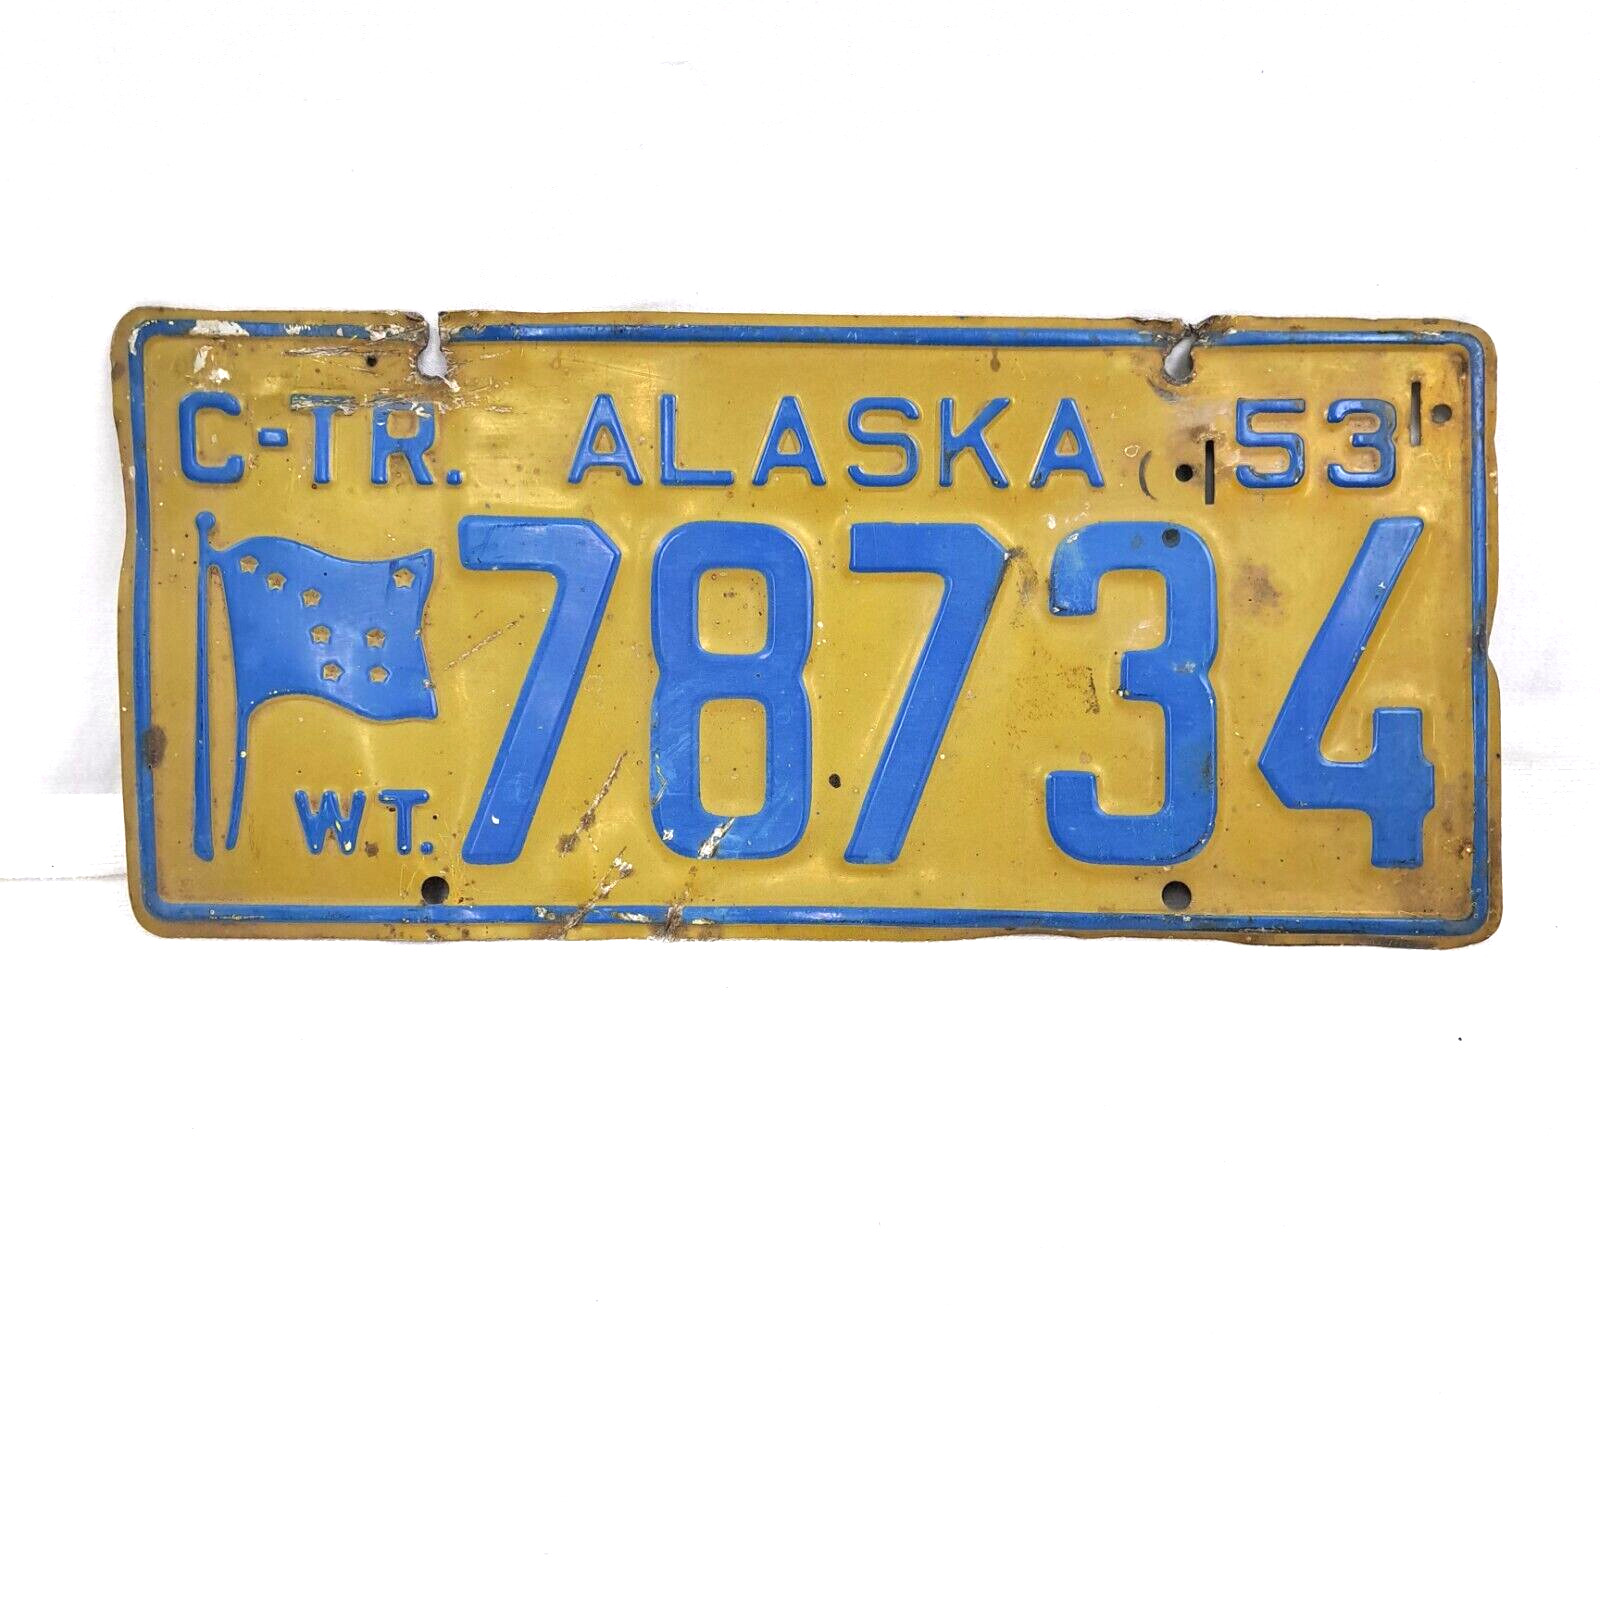 ALASKA C-TR W.T. 1953 License Plate